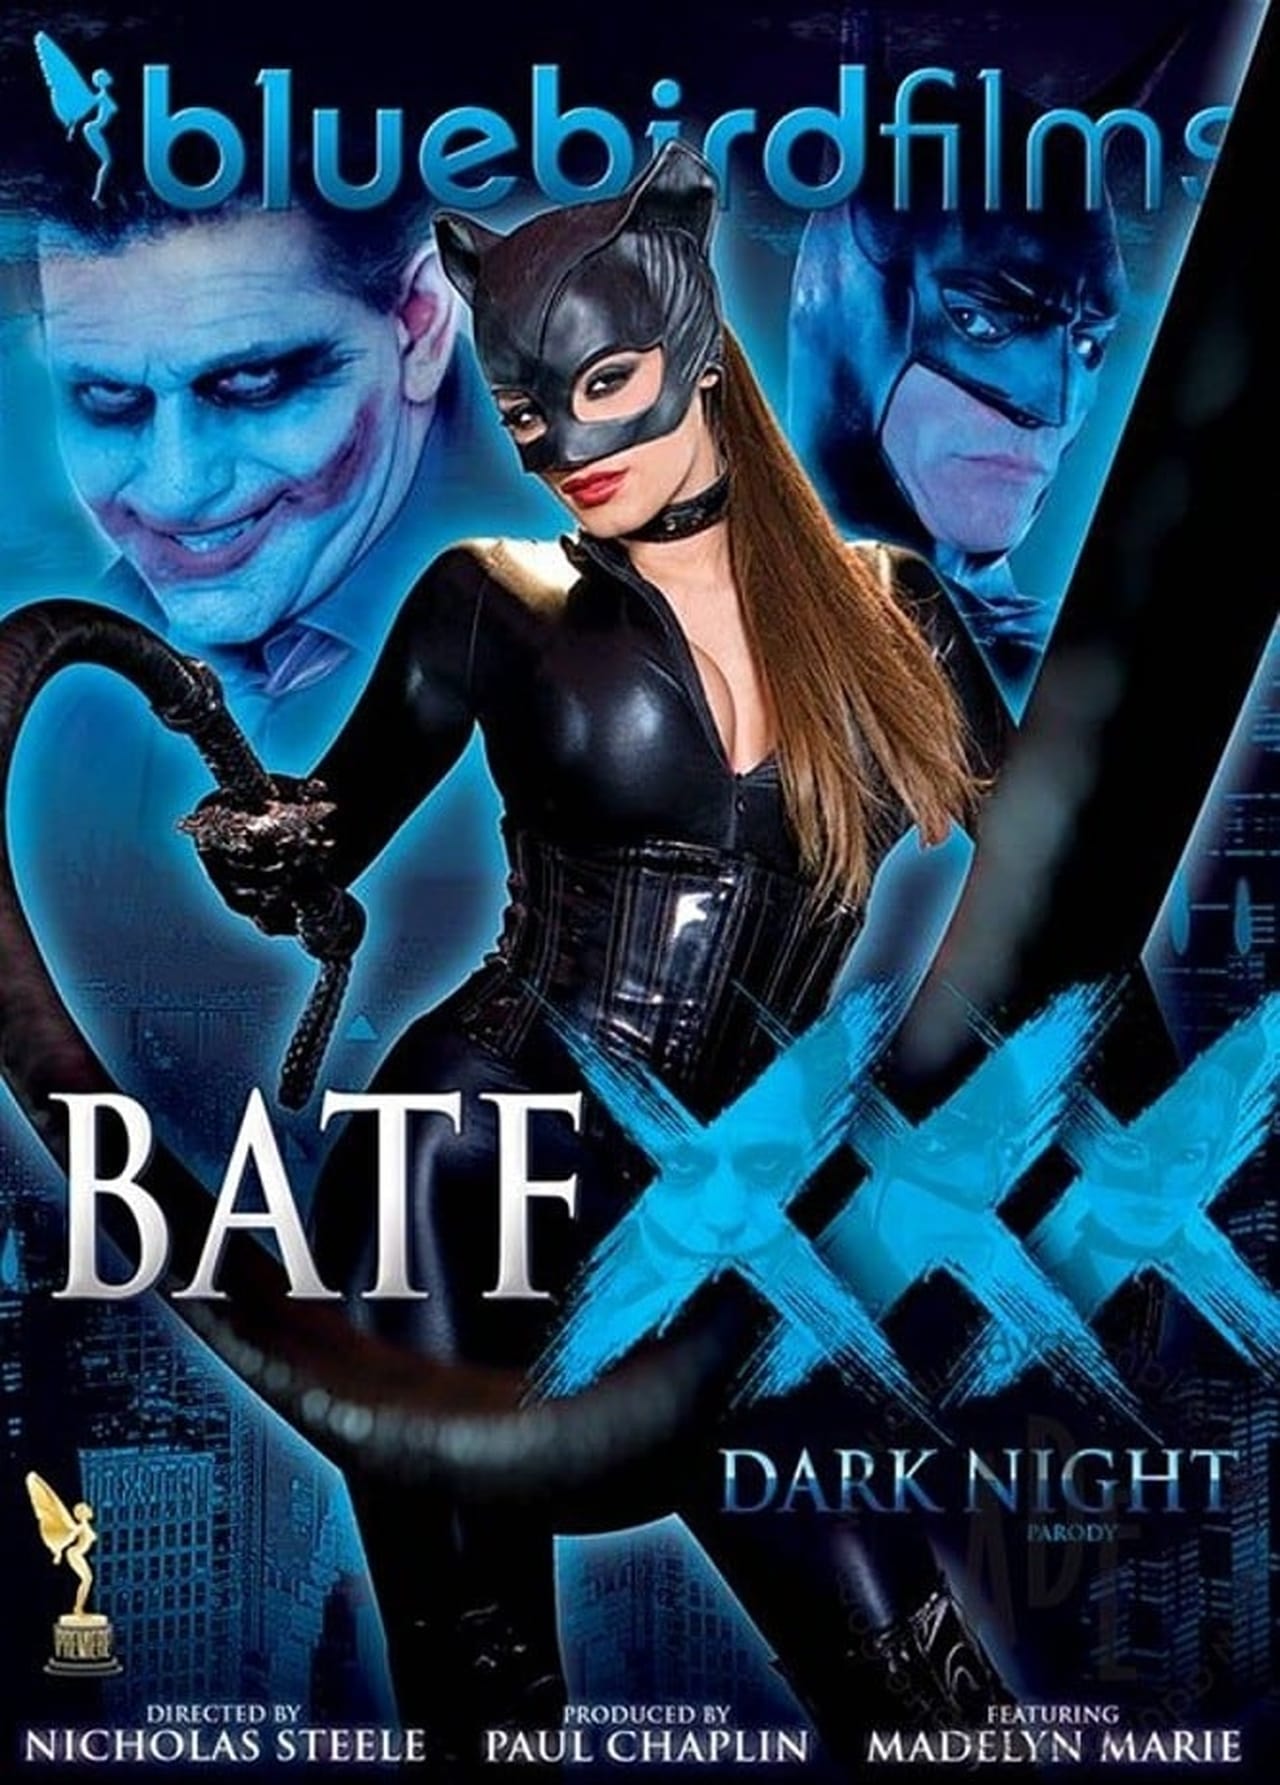 Batfxxx dark night parody